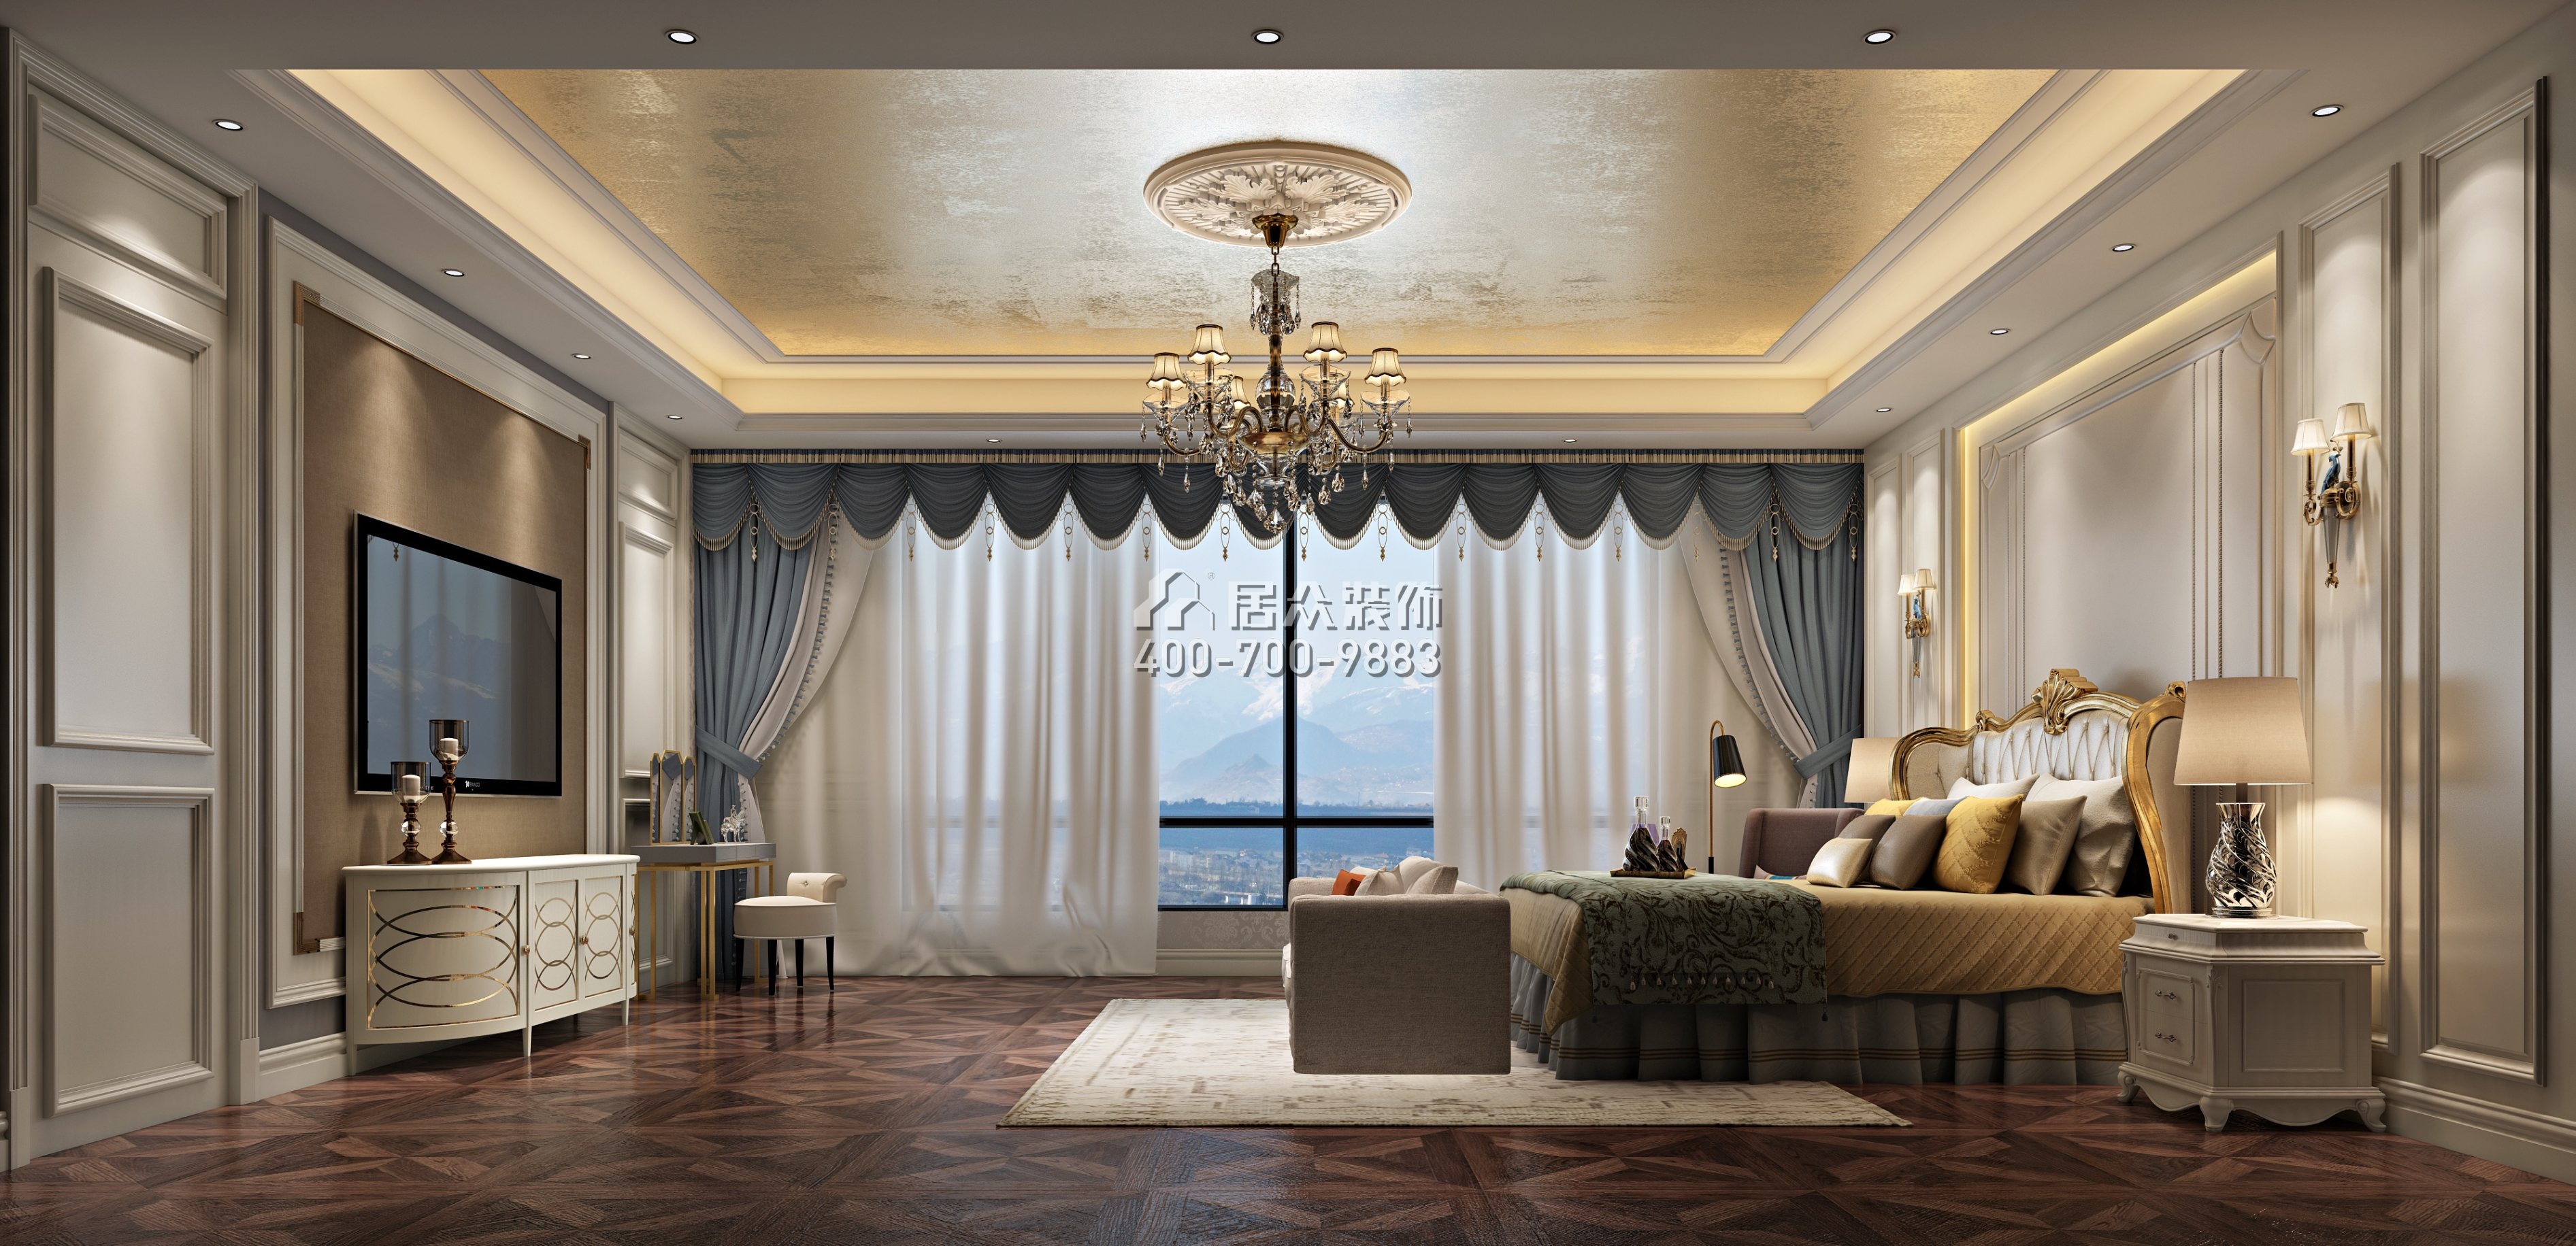 仁山智水花园一期300平方米美式风格平层户型卧室装修效果图